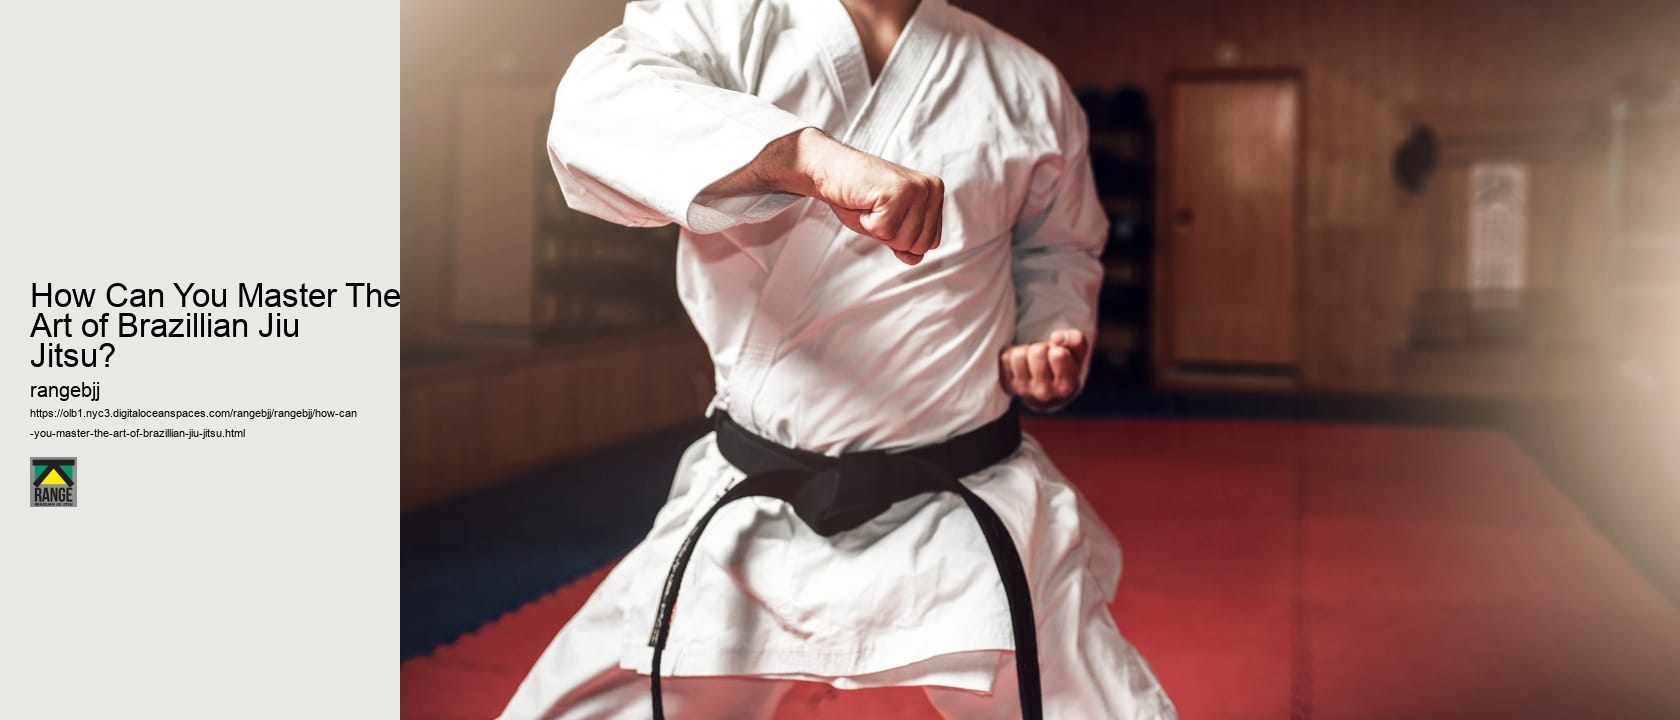 How Can You Master The Art of Brazillian Jiu Jitsu?